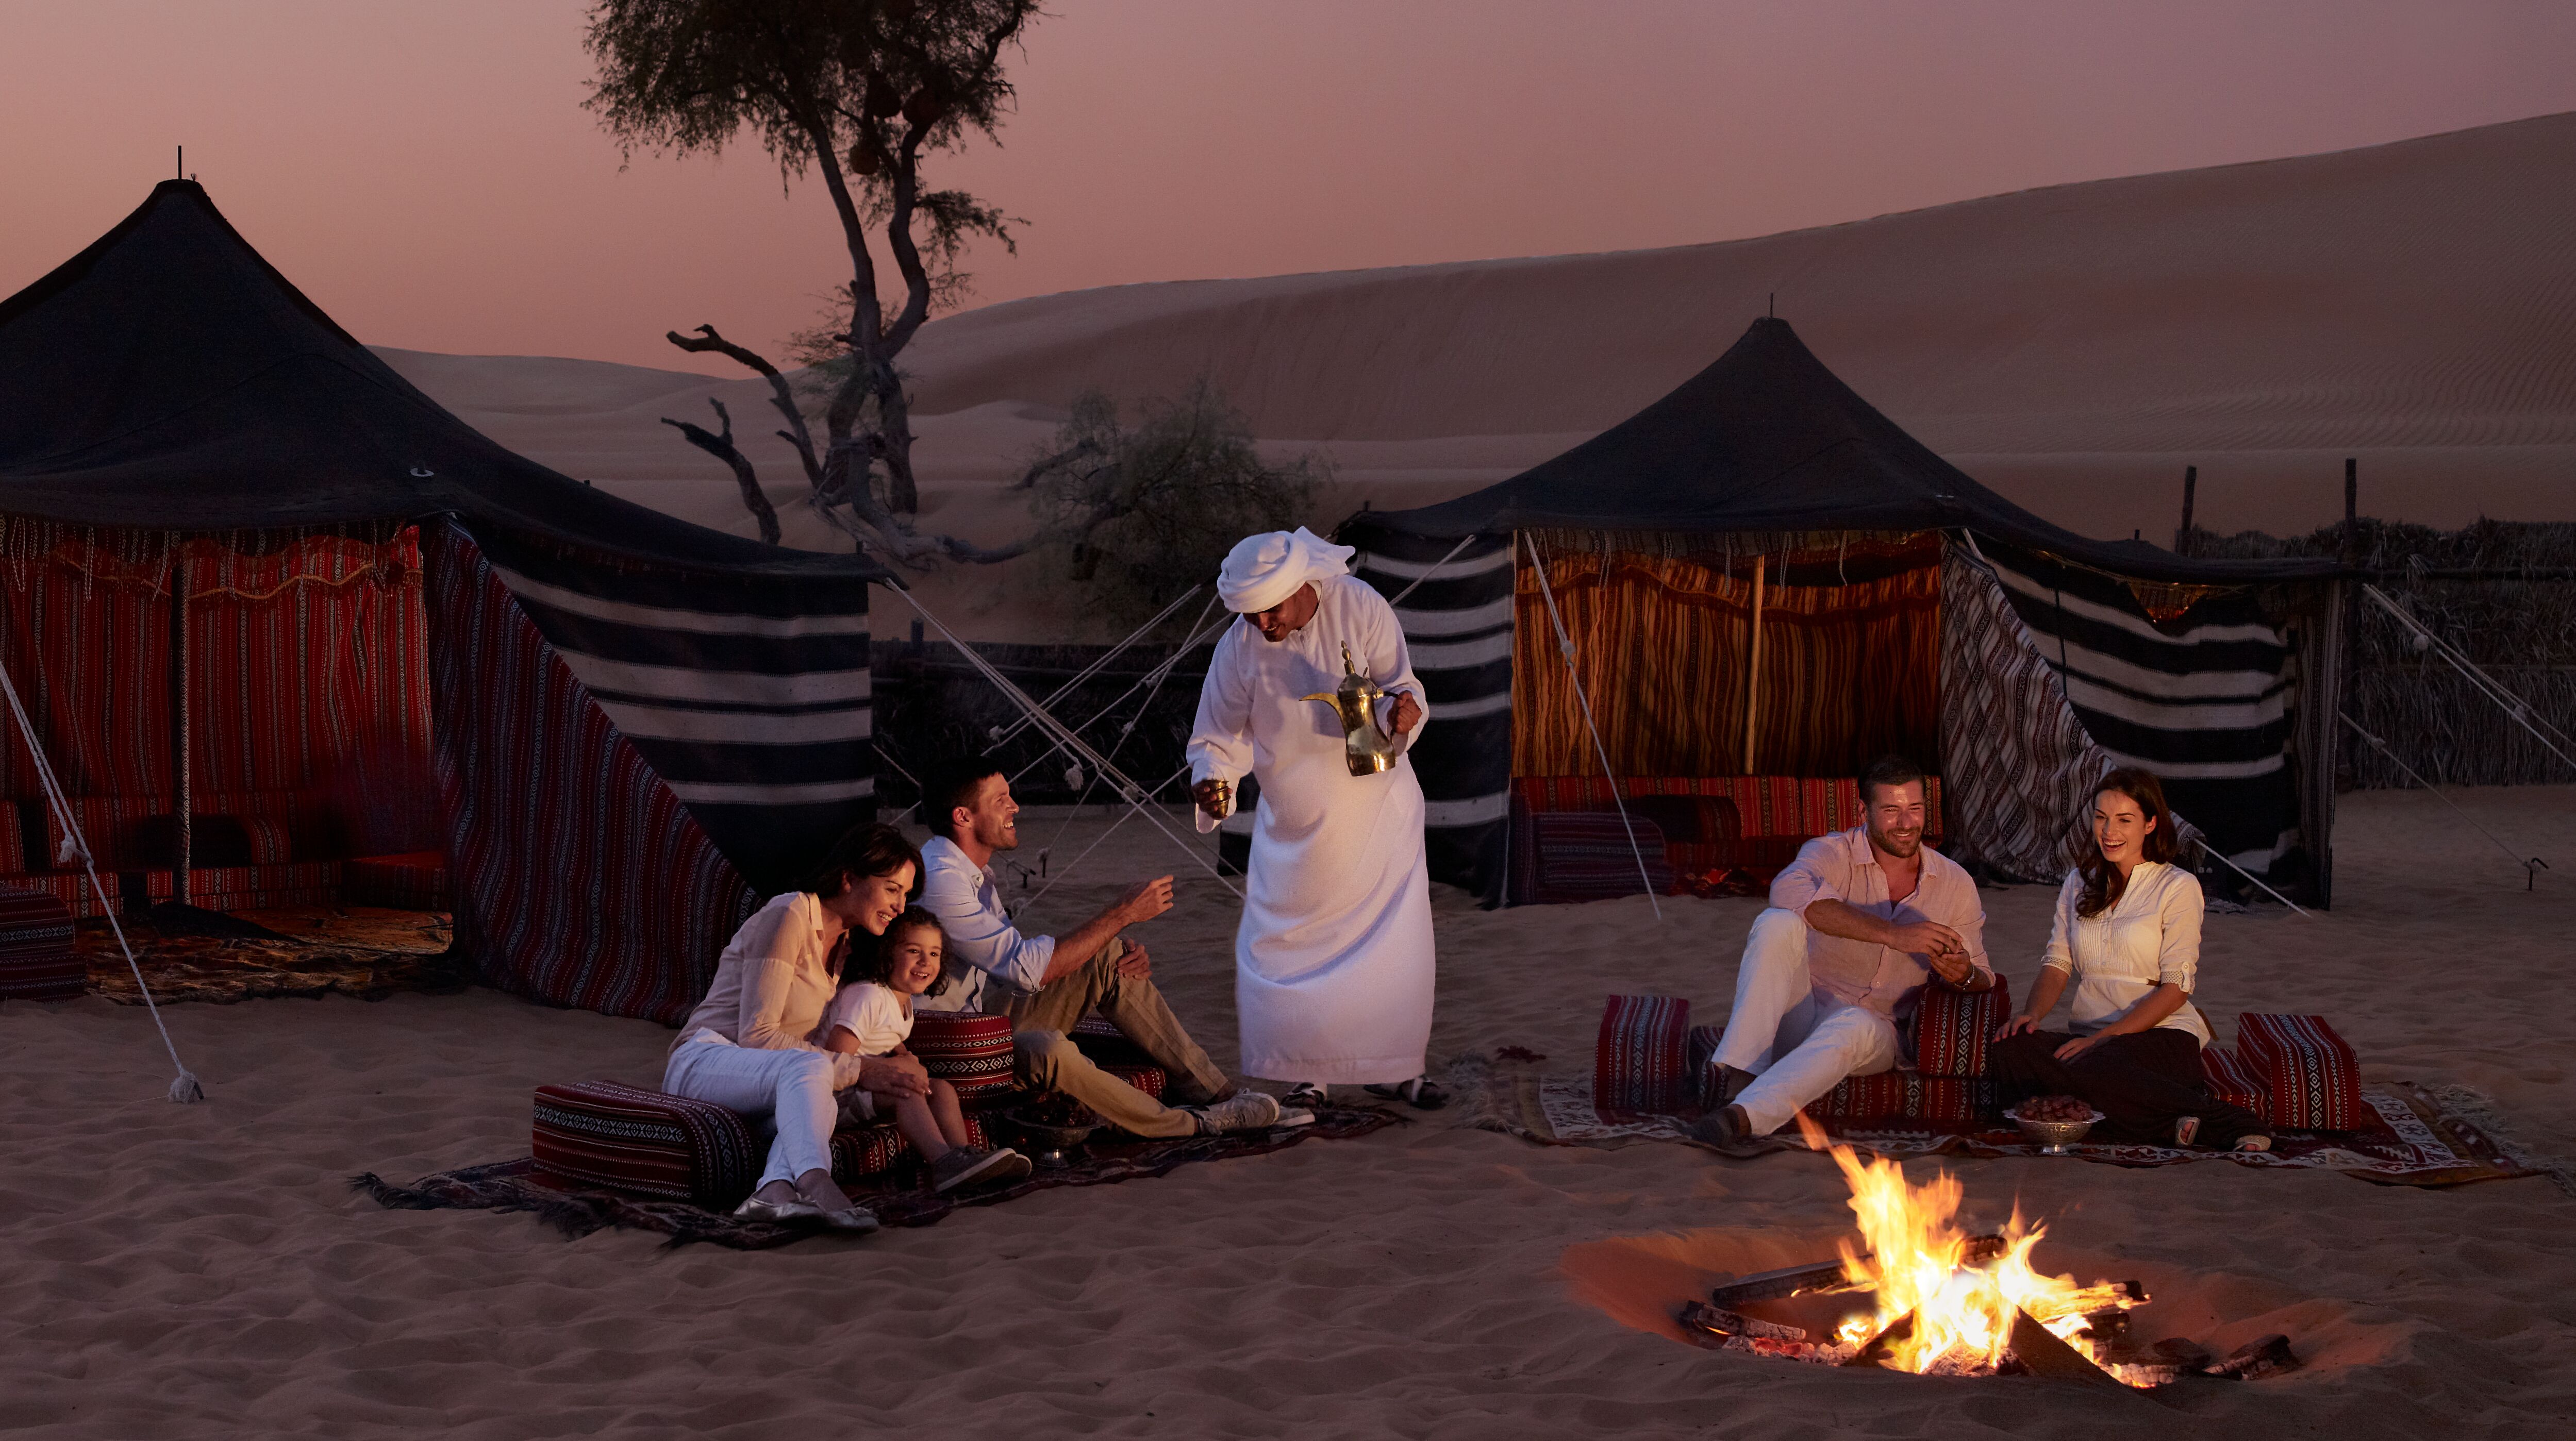 كثبان رملية أمامها بيوت شعر وأشخاص أجانب يحتسون القهوة المقدمة لهم من قبل رجل بزي إماراتي حول النار المضاءة في  الوسط وقت المغرب